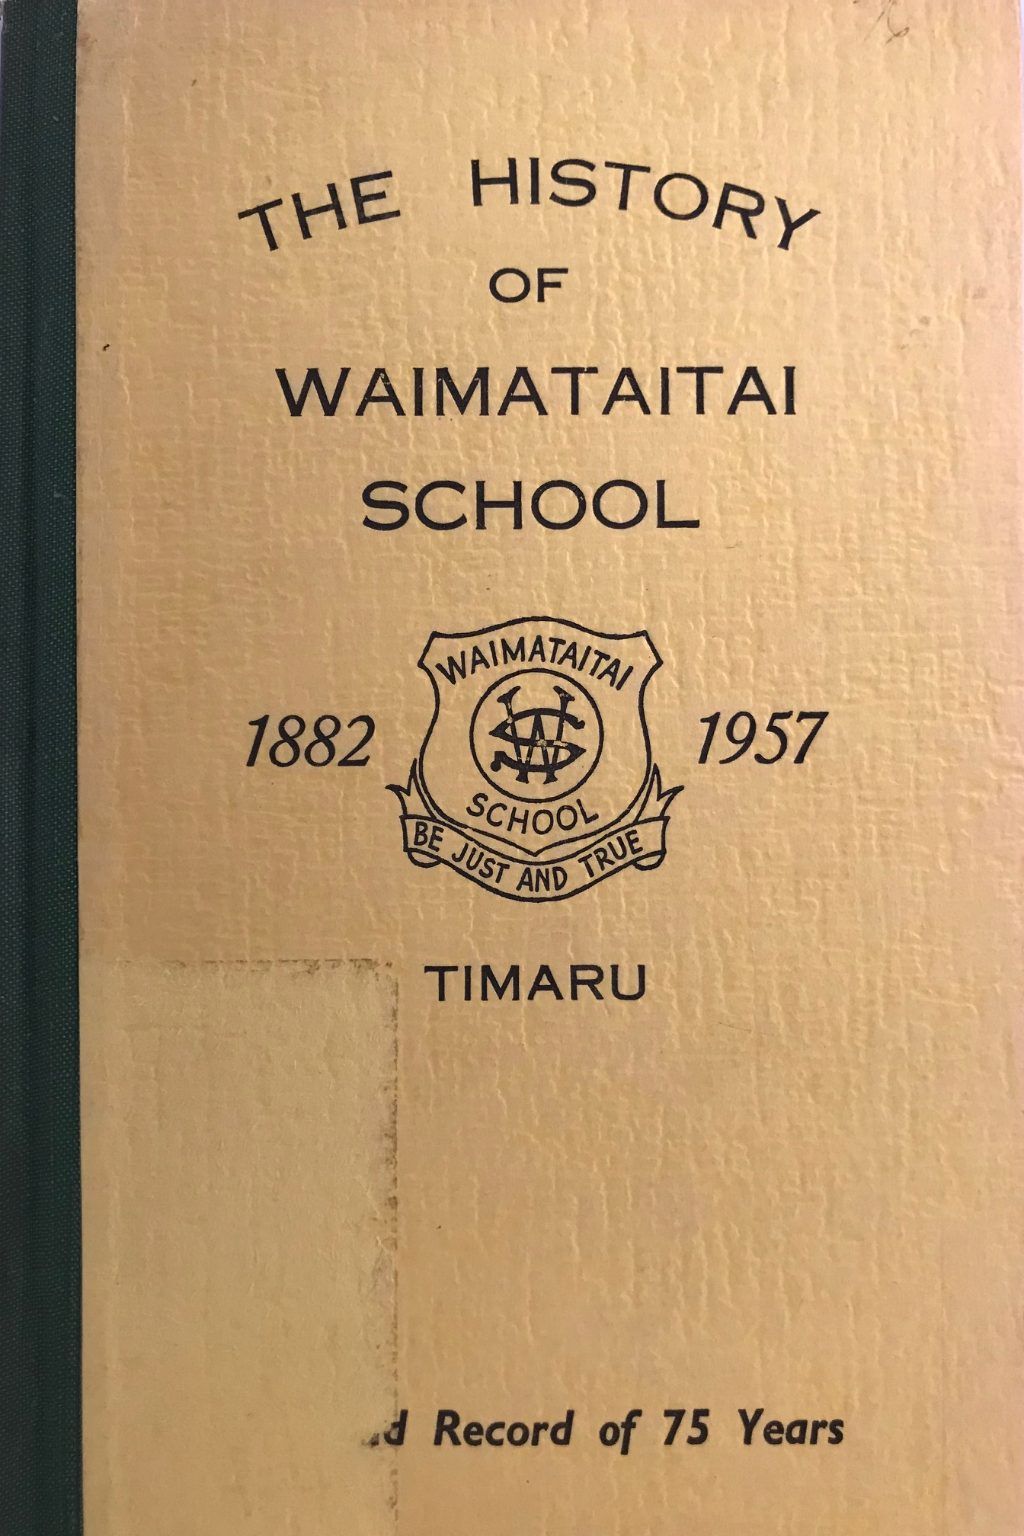 THE HISTORY OF WAIMATAITAI SCHOOL Timaru 1882-1957: Proud History of 75 Years